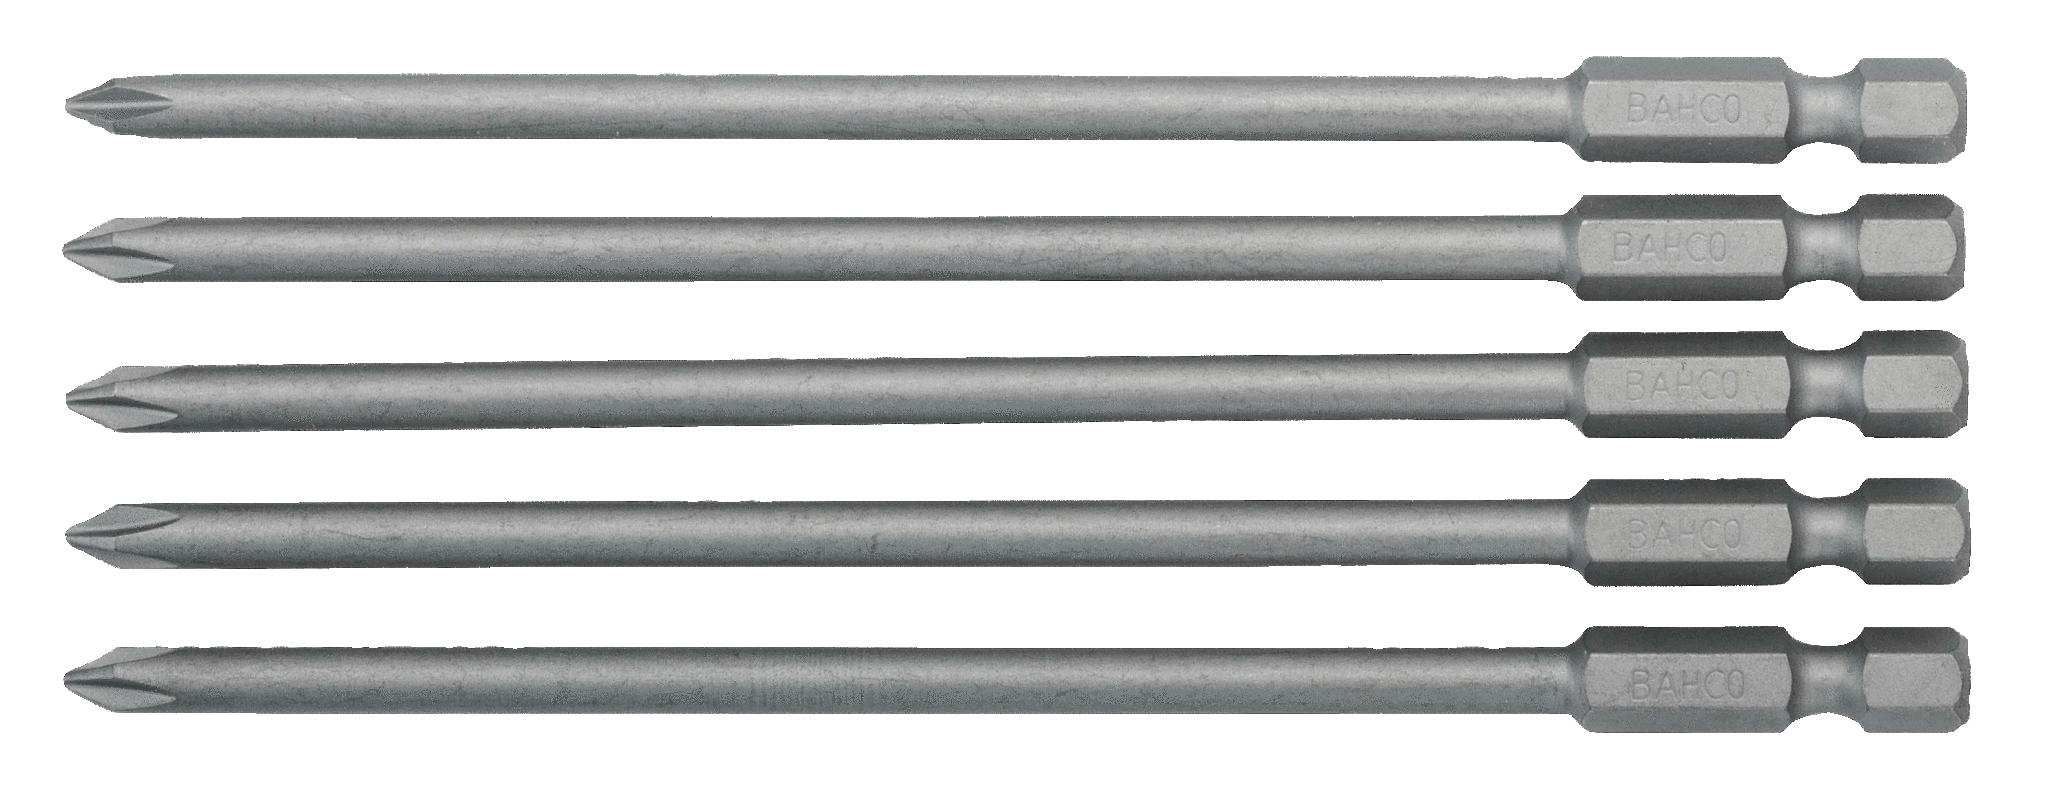 картинка Стандартные биты для отверток Phillips, 125 мм BAHCO 59S/125PH2 от магазина "Элит-инструмент"